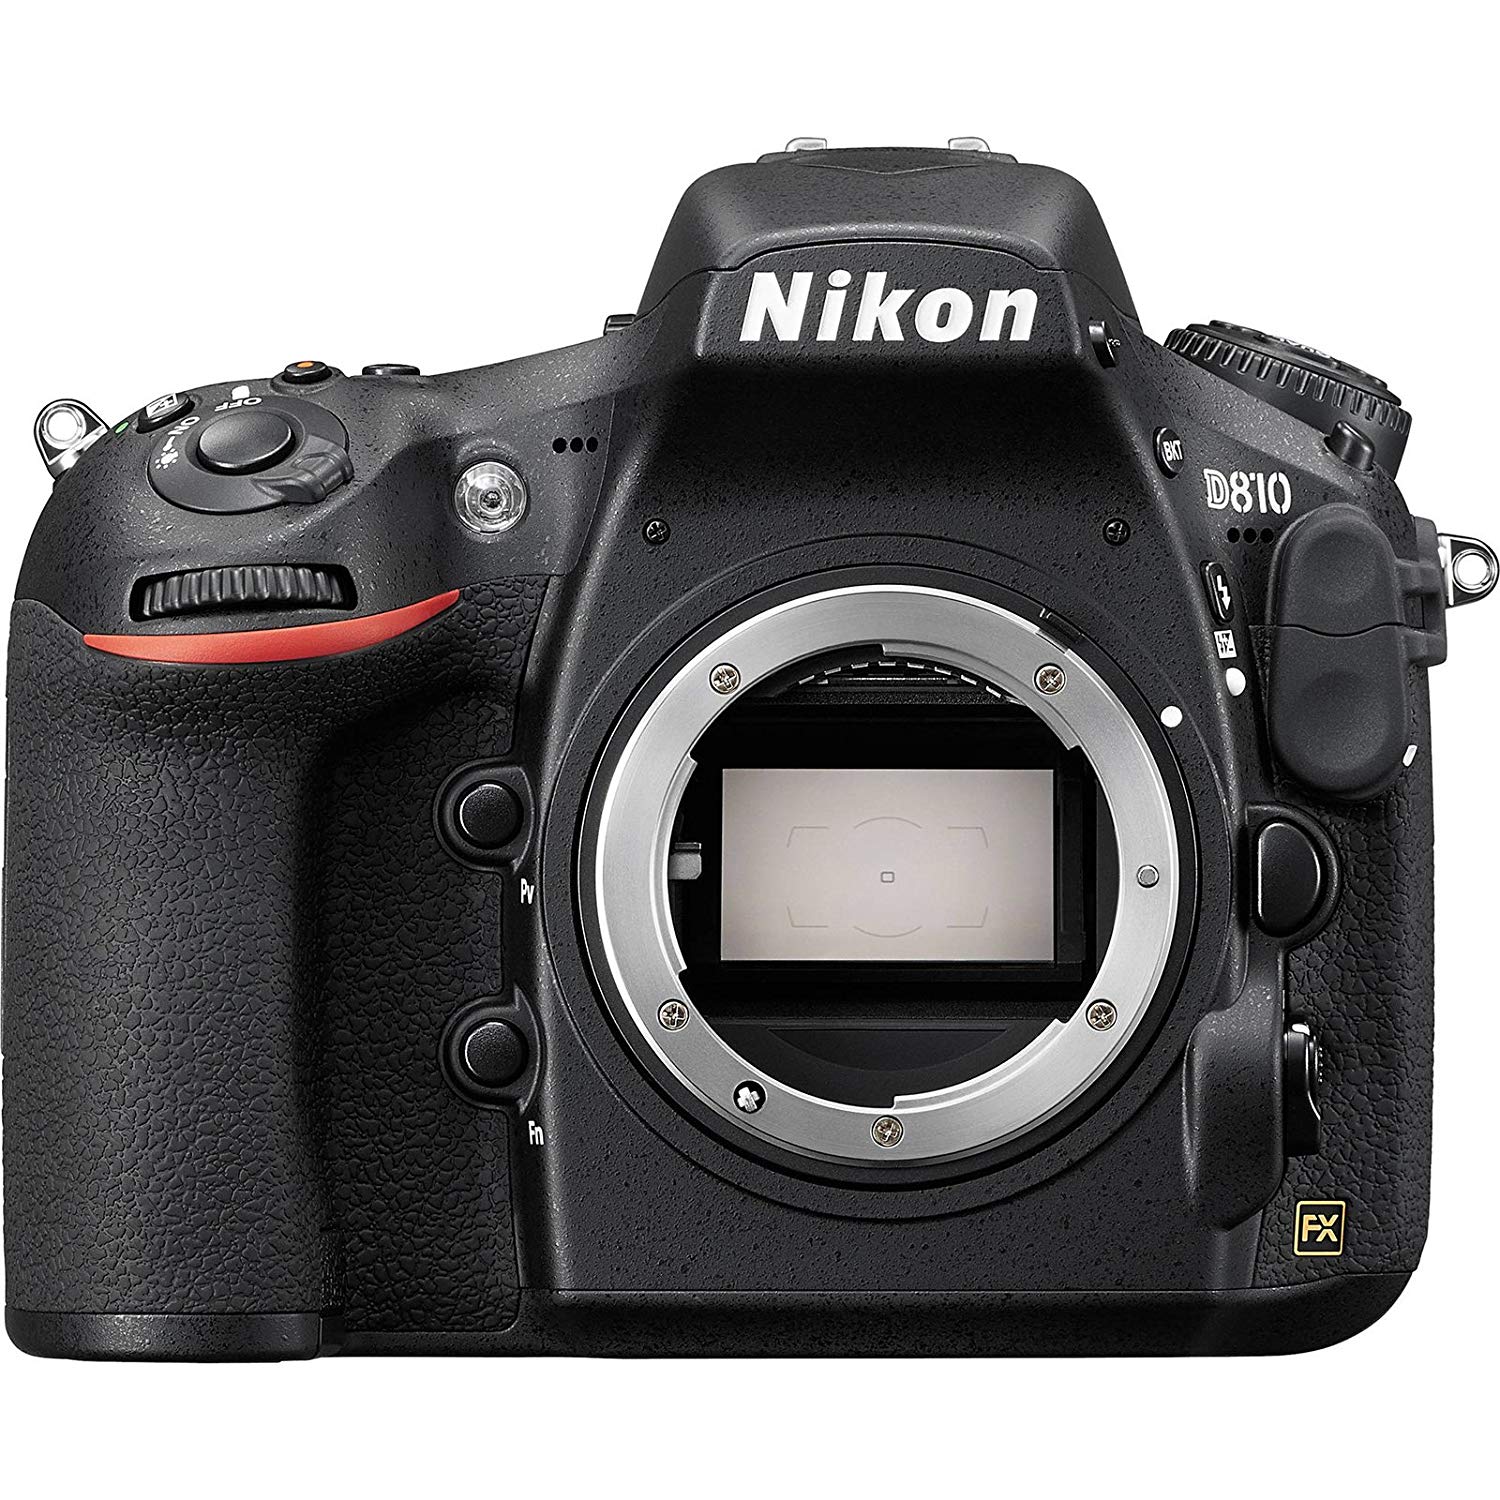 Nikon Corpo da câmera digital SLR D810 (recondicionado certificado)